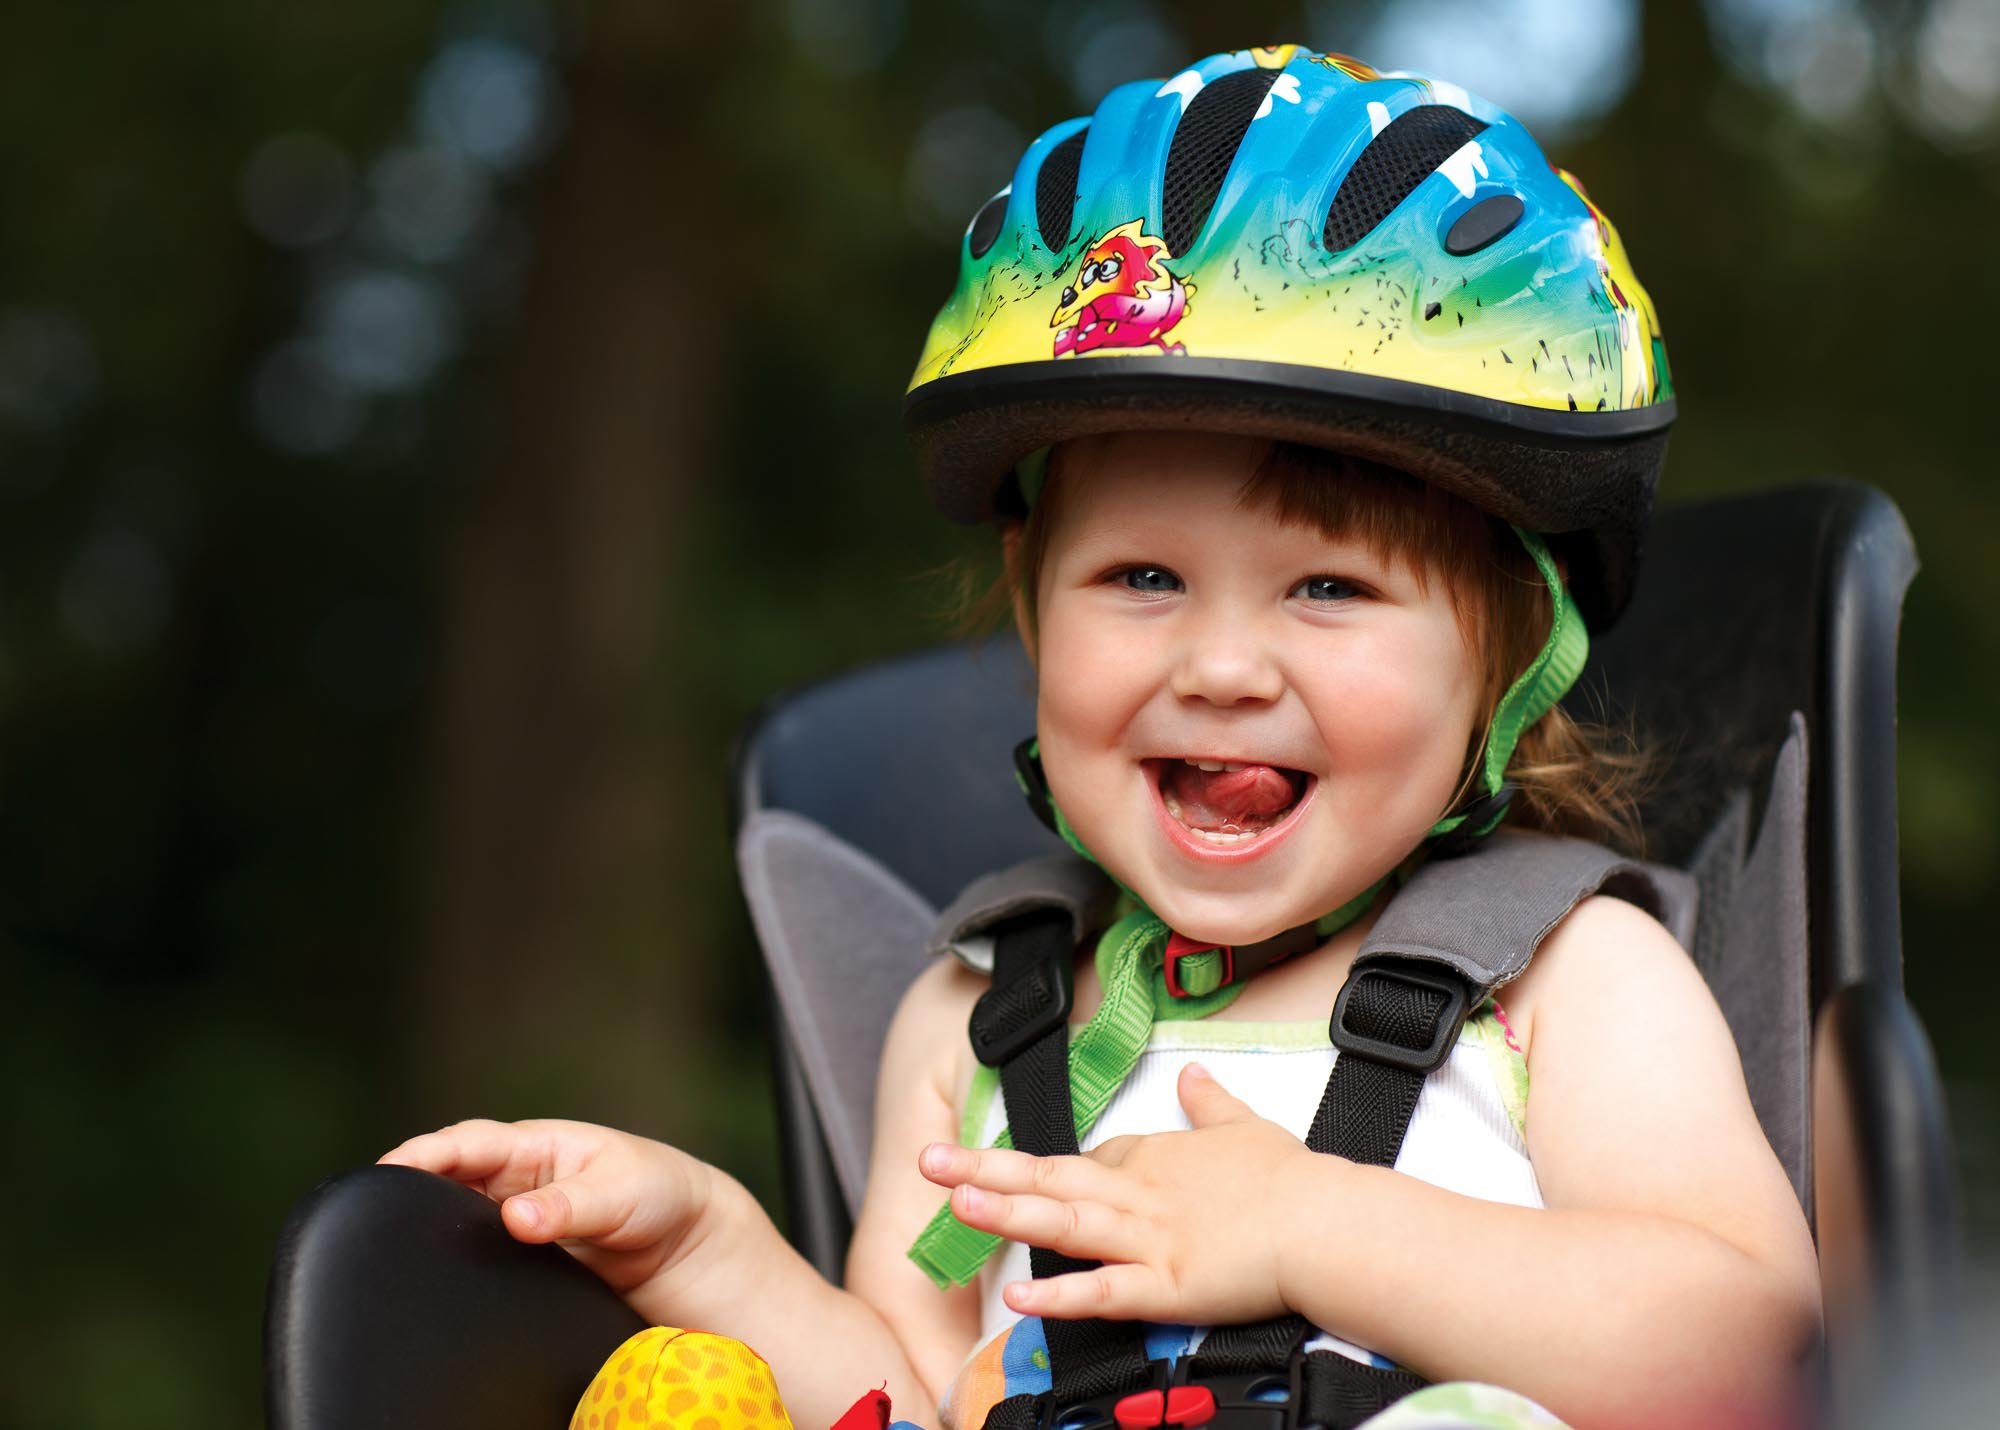 Usmiate dievčatko v cyklosedačke s prilbou